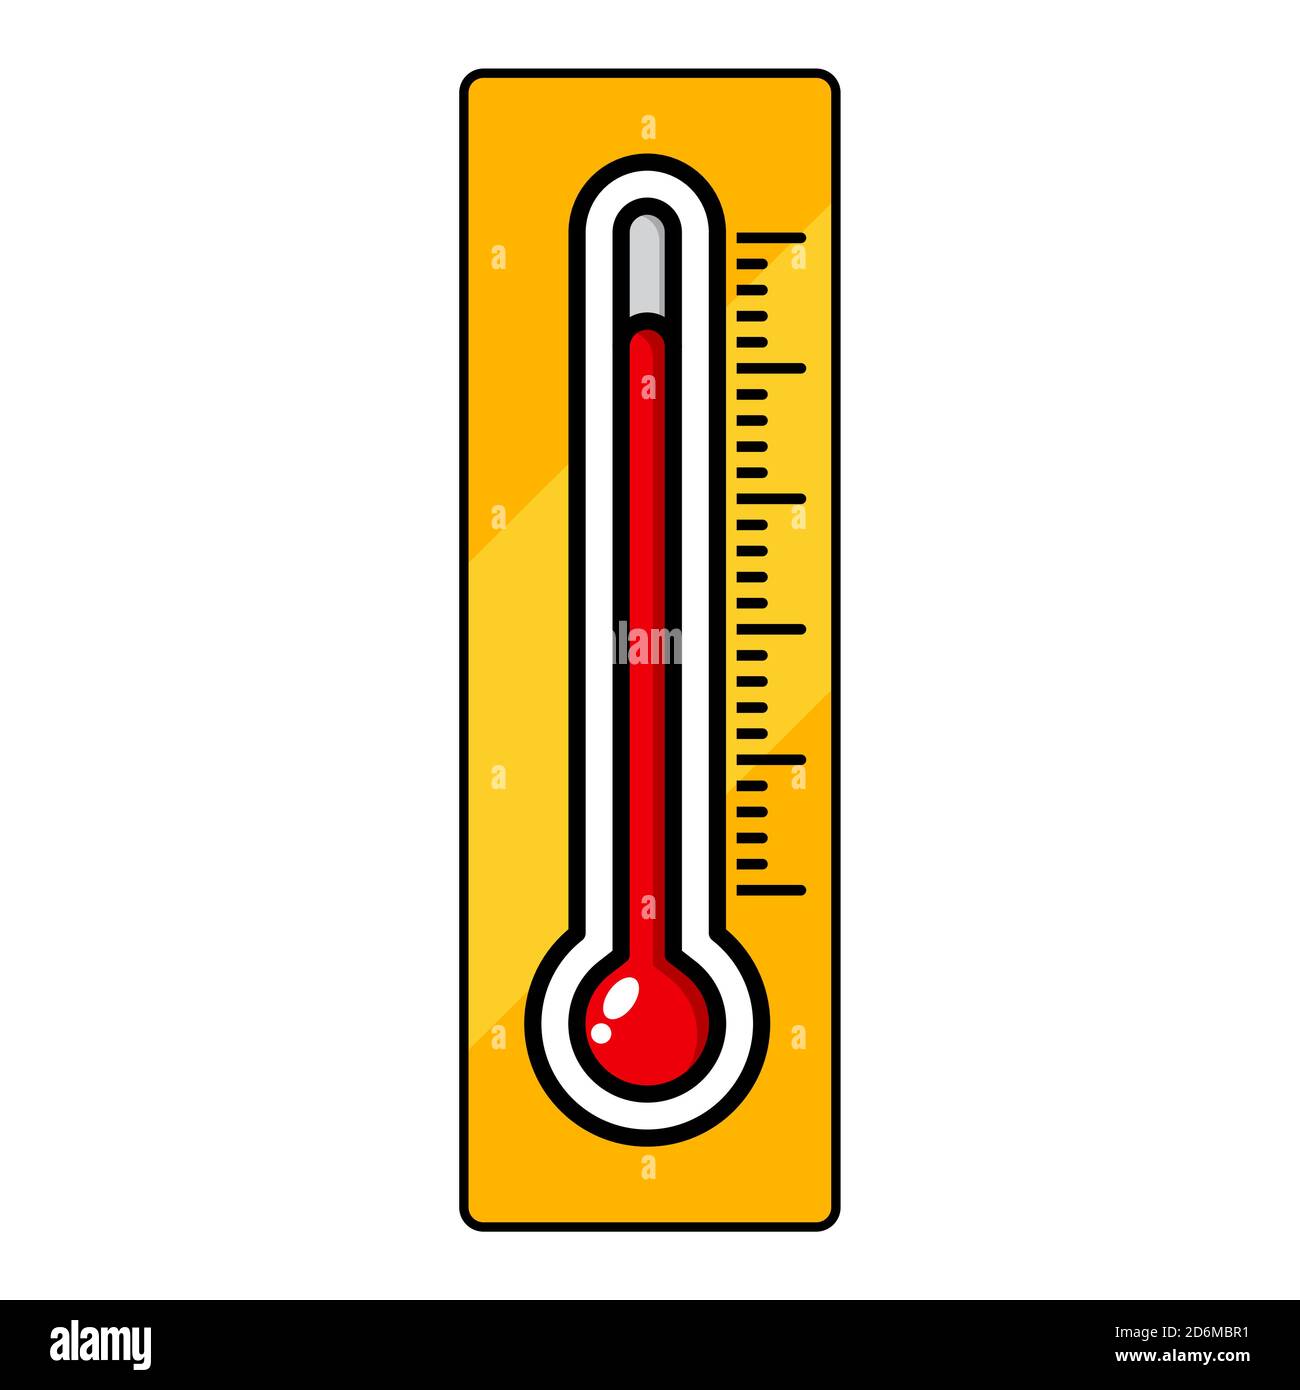 Abbildung der Thermometerclipteile auf Weiß isoliert. Herbstliches Vektordesign. Temperaturmessung Herbstsymbol. Symbol für Wetteranzeige. W Stock Vektor